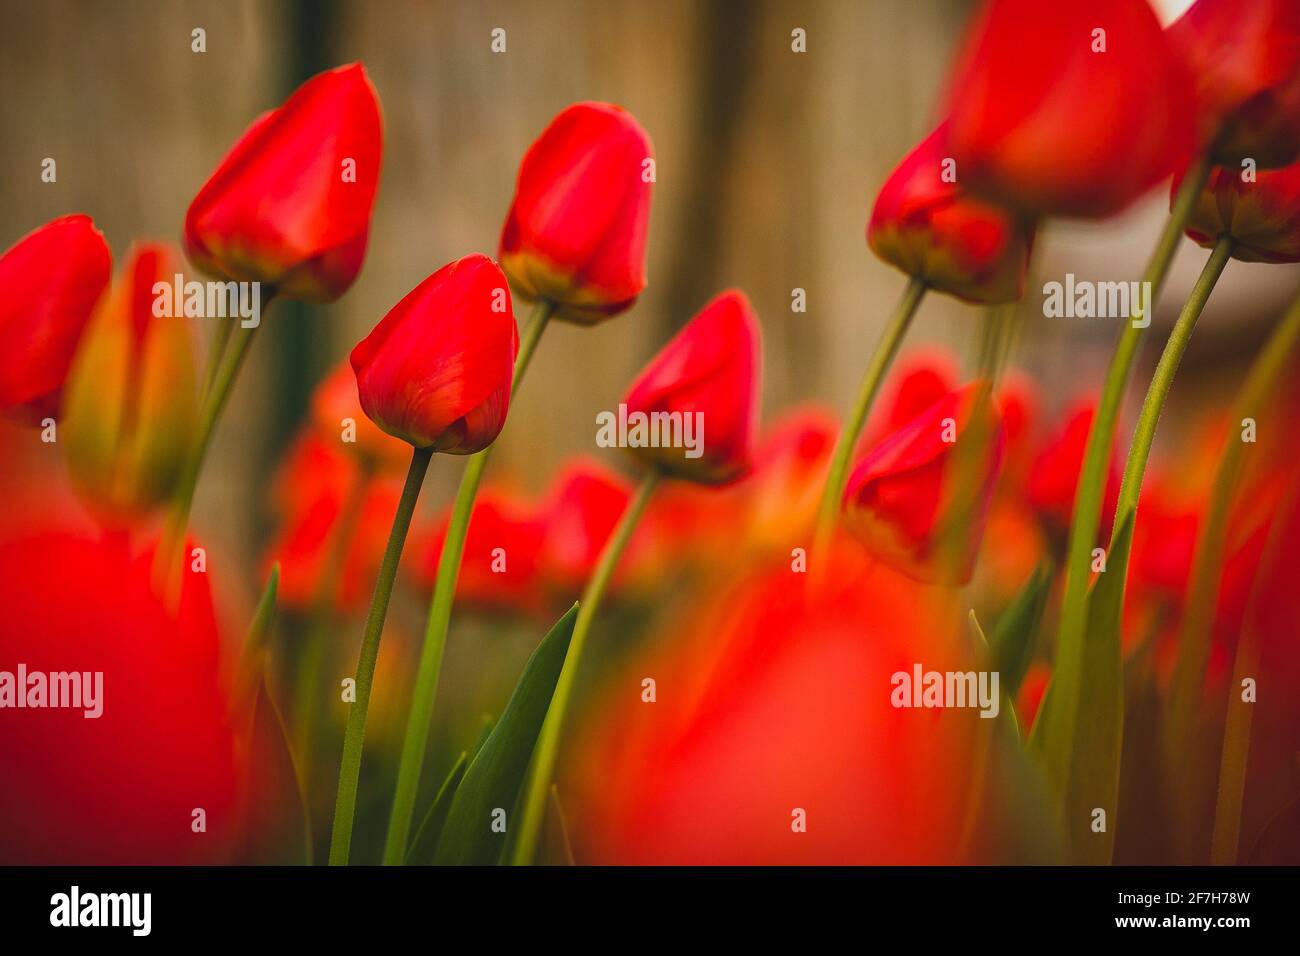 Tulipani rossi chiusi in un giardino di casa. Uno dei tulipani è a fuoco, altri in forte sfocatura. Foto Stock